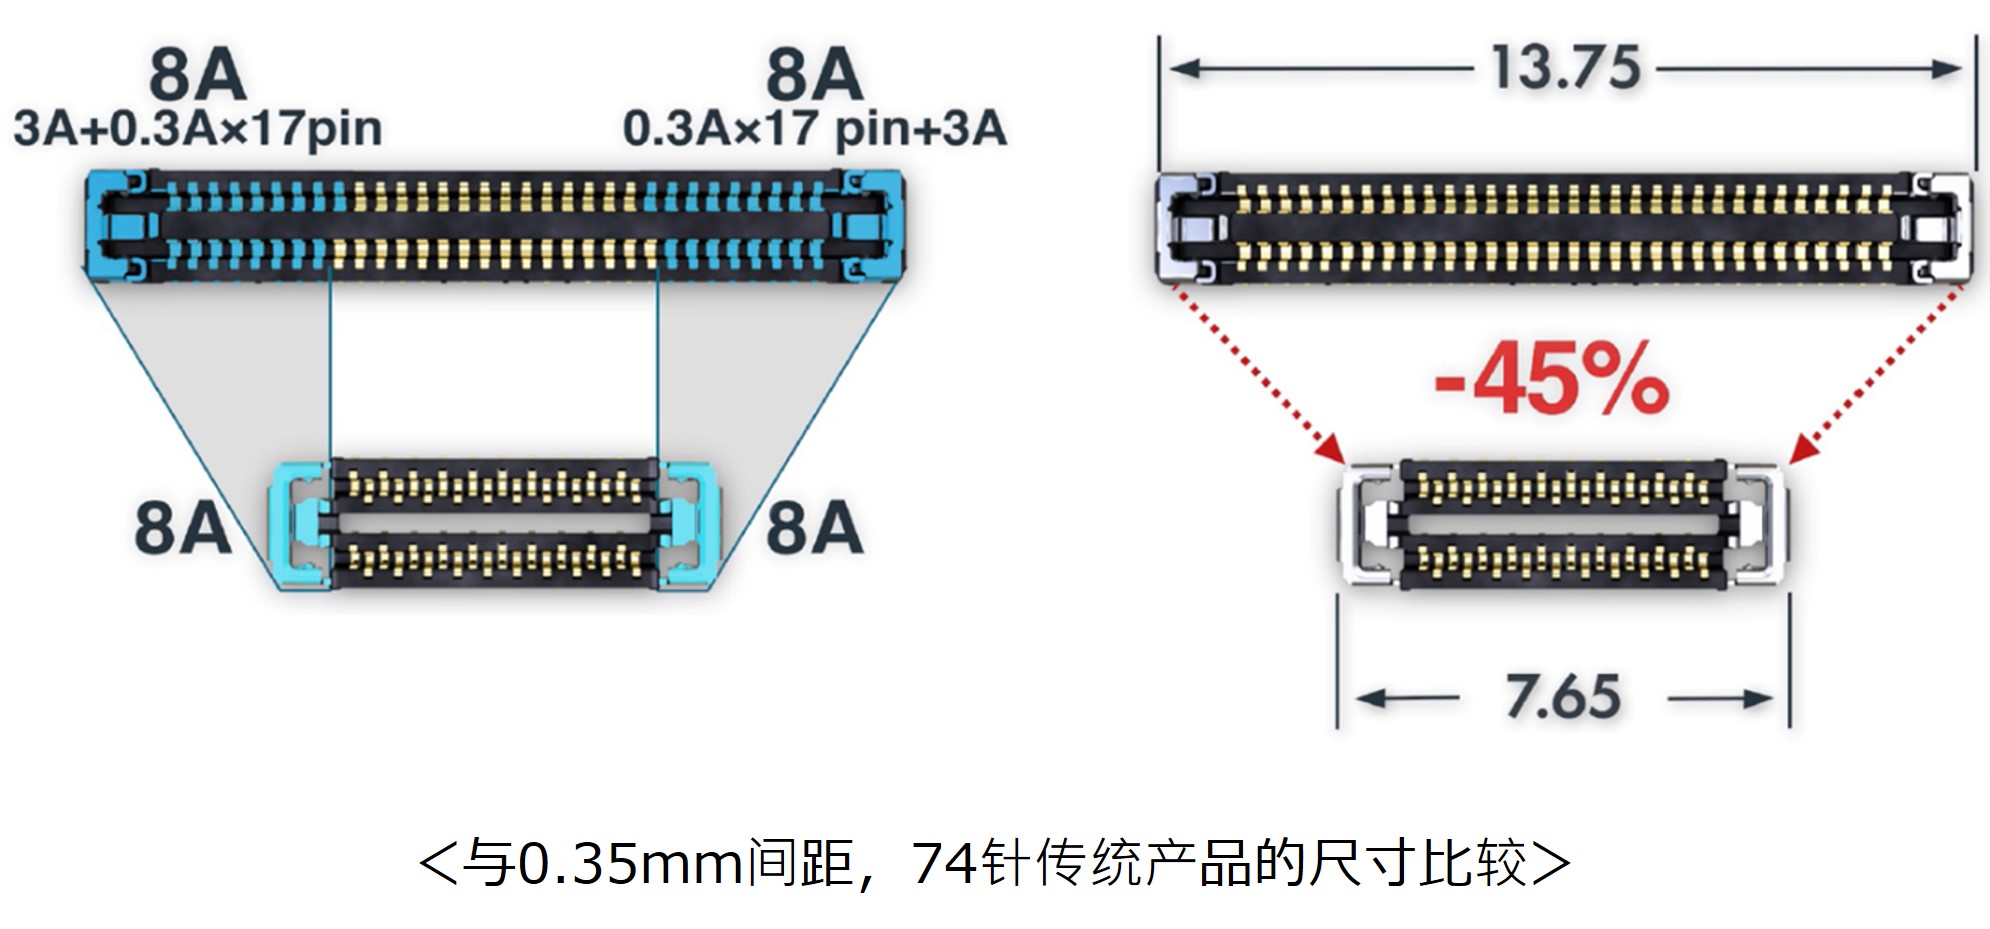 板对板（FPC）连接器WP86SD系列